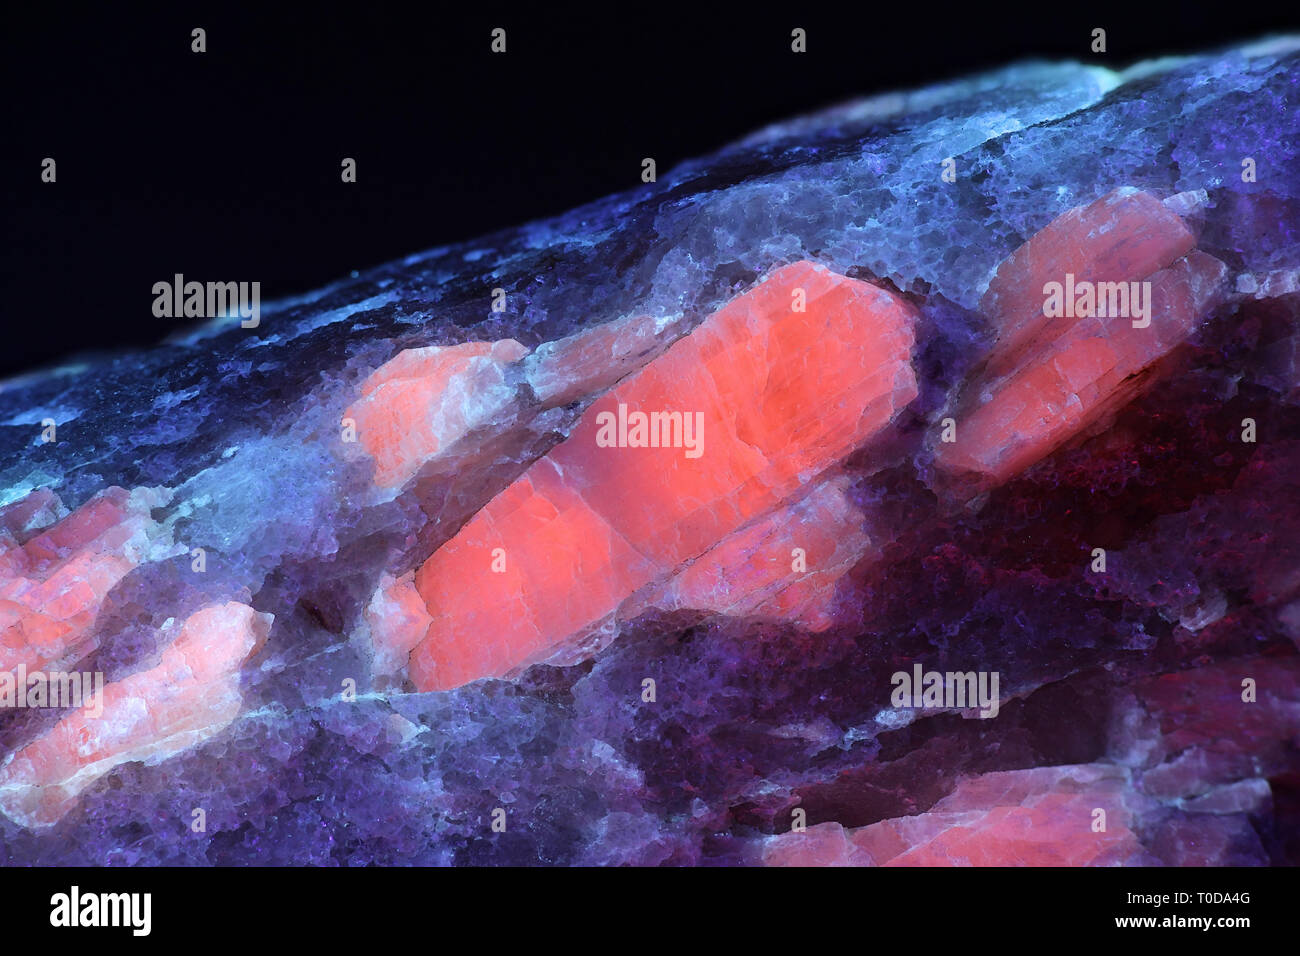 Kristalle von industriellen Lithium Erz spodumene zeigen rote Fluoreszenz im UV-Licht (365 nm). Probe von Haapaluoma Lithium Steinbruch in Stockfoto